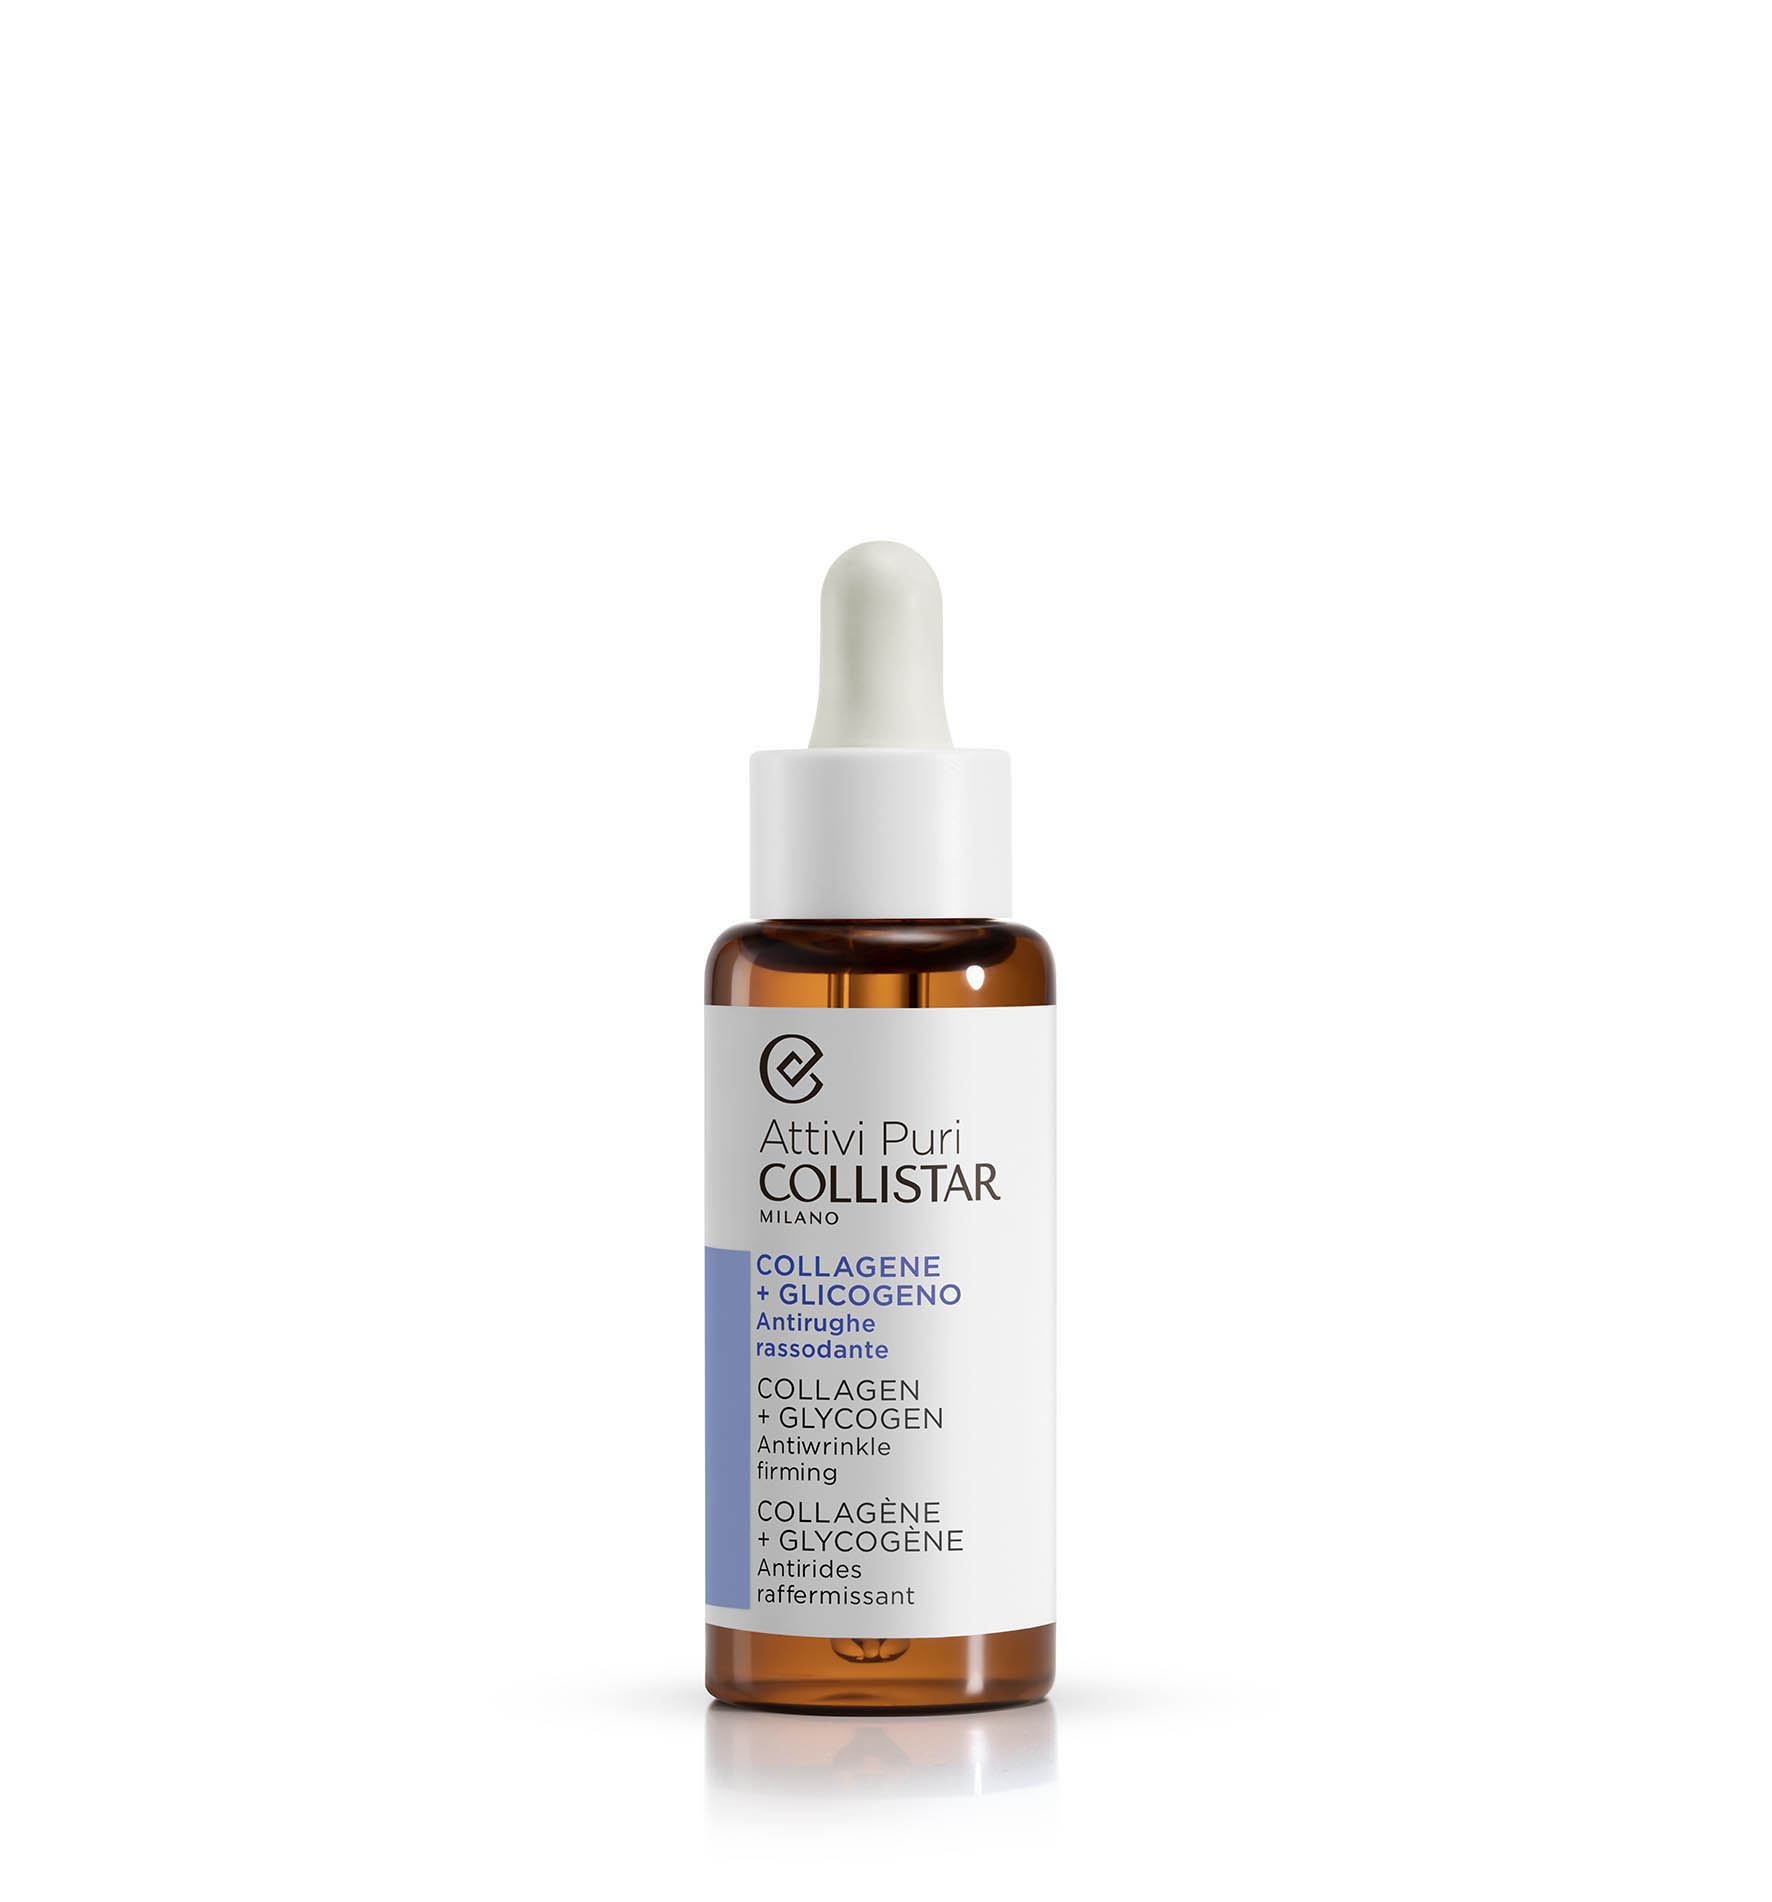 COLLAGEN + GLYCOGEN - Sensitive skin | Collistar - Shop Online Ufficiale